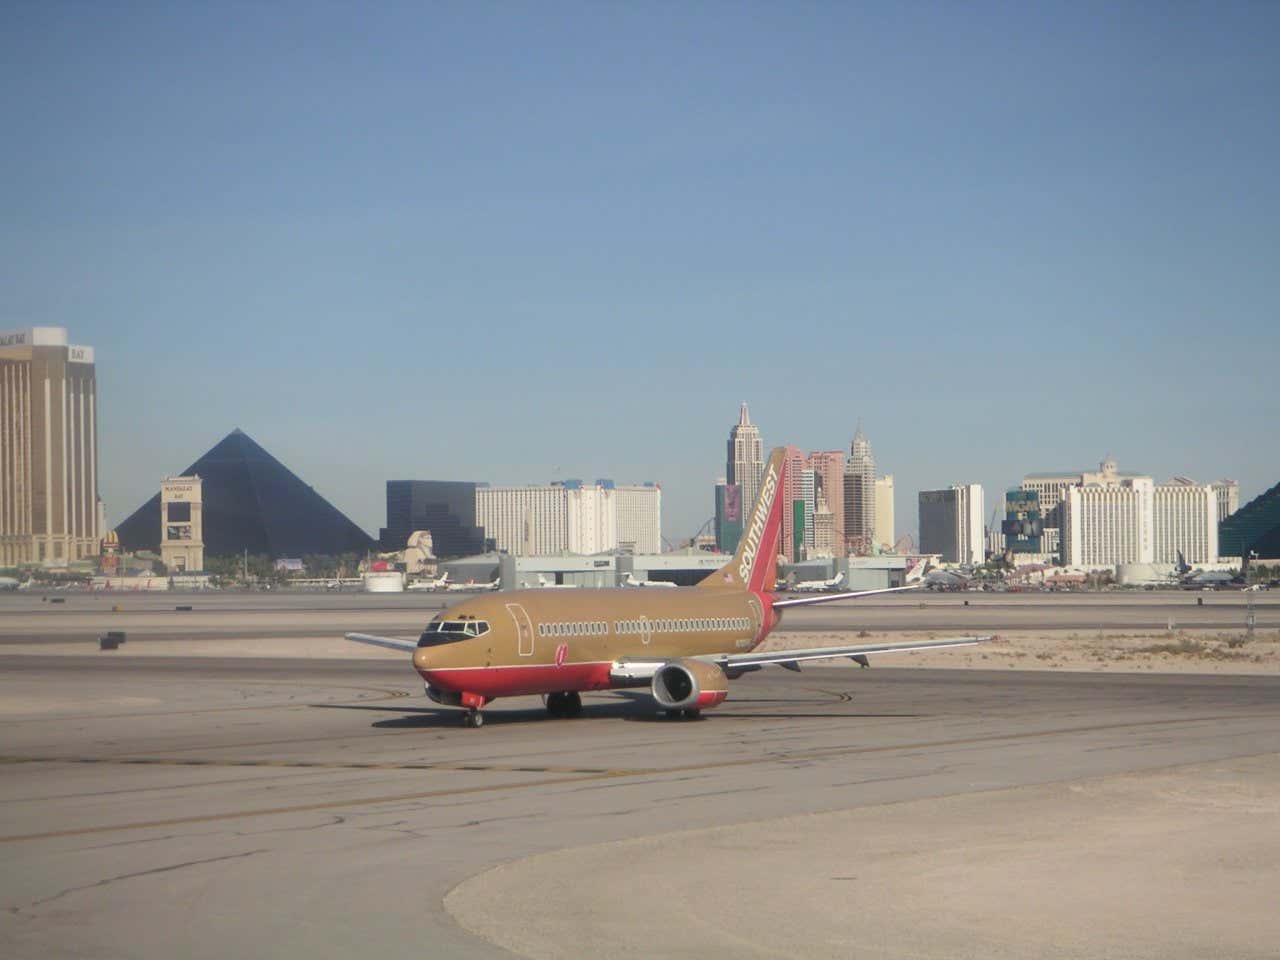 Un avión dorado y rojo en primer plano, con el horizonte de Las Vegas en el fondo, incluida la Pirámide Luxor